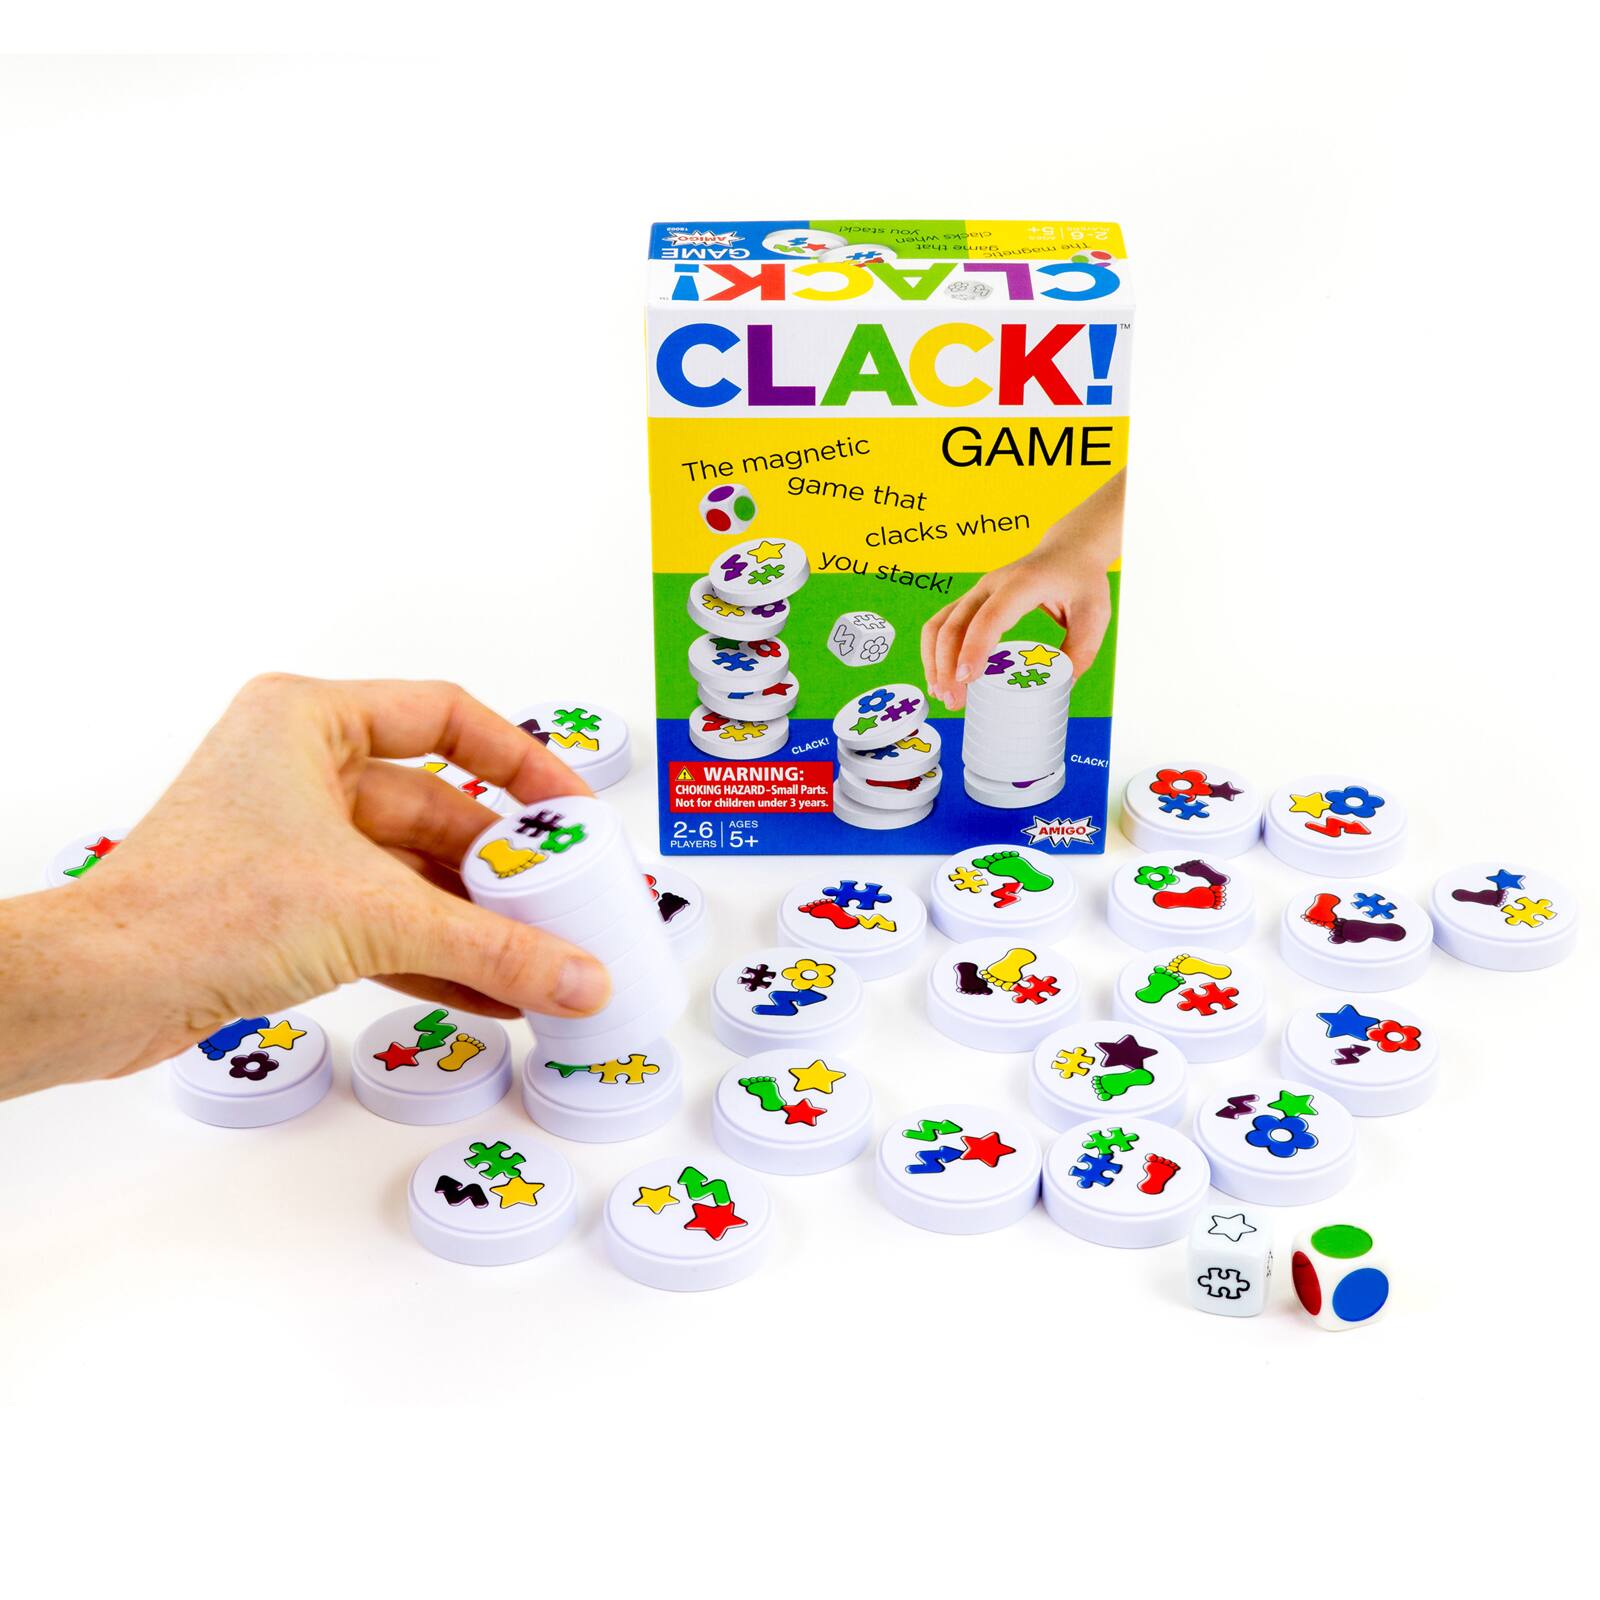 Clack Game By Amigo 